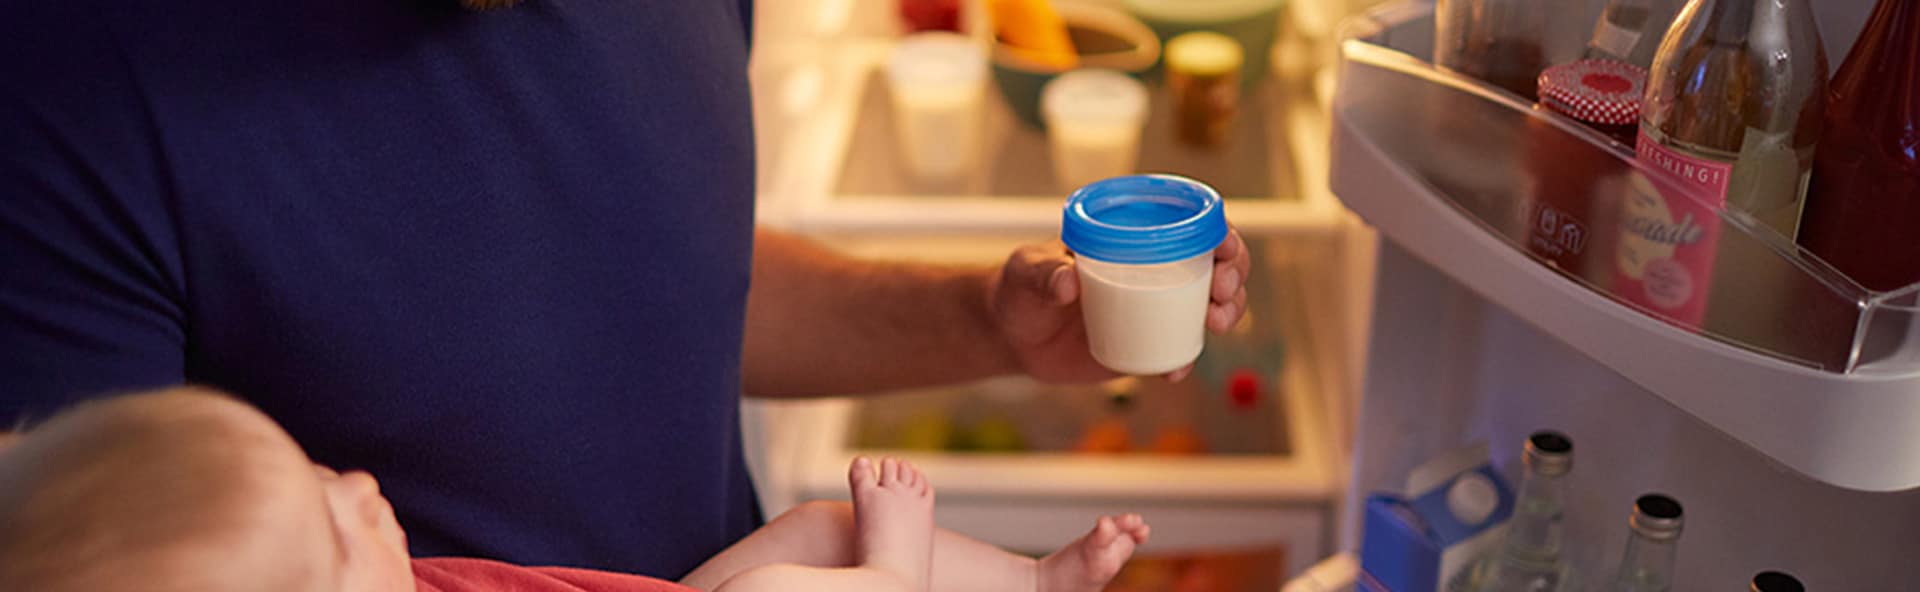 Ein Vater lagert Muttermilch im Kühlschrank